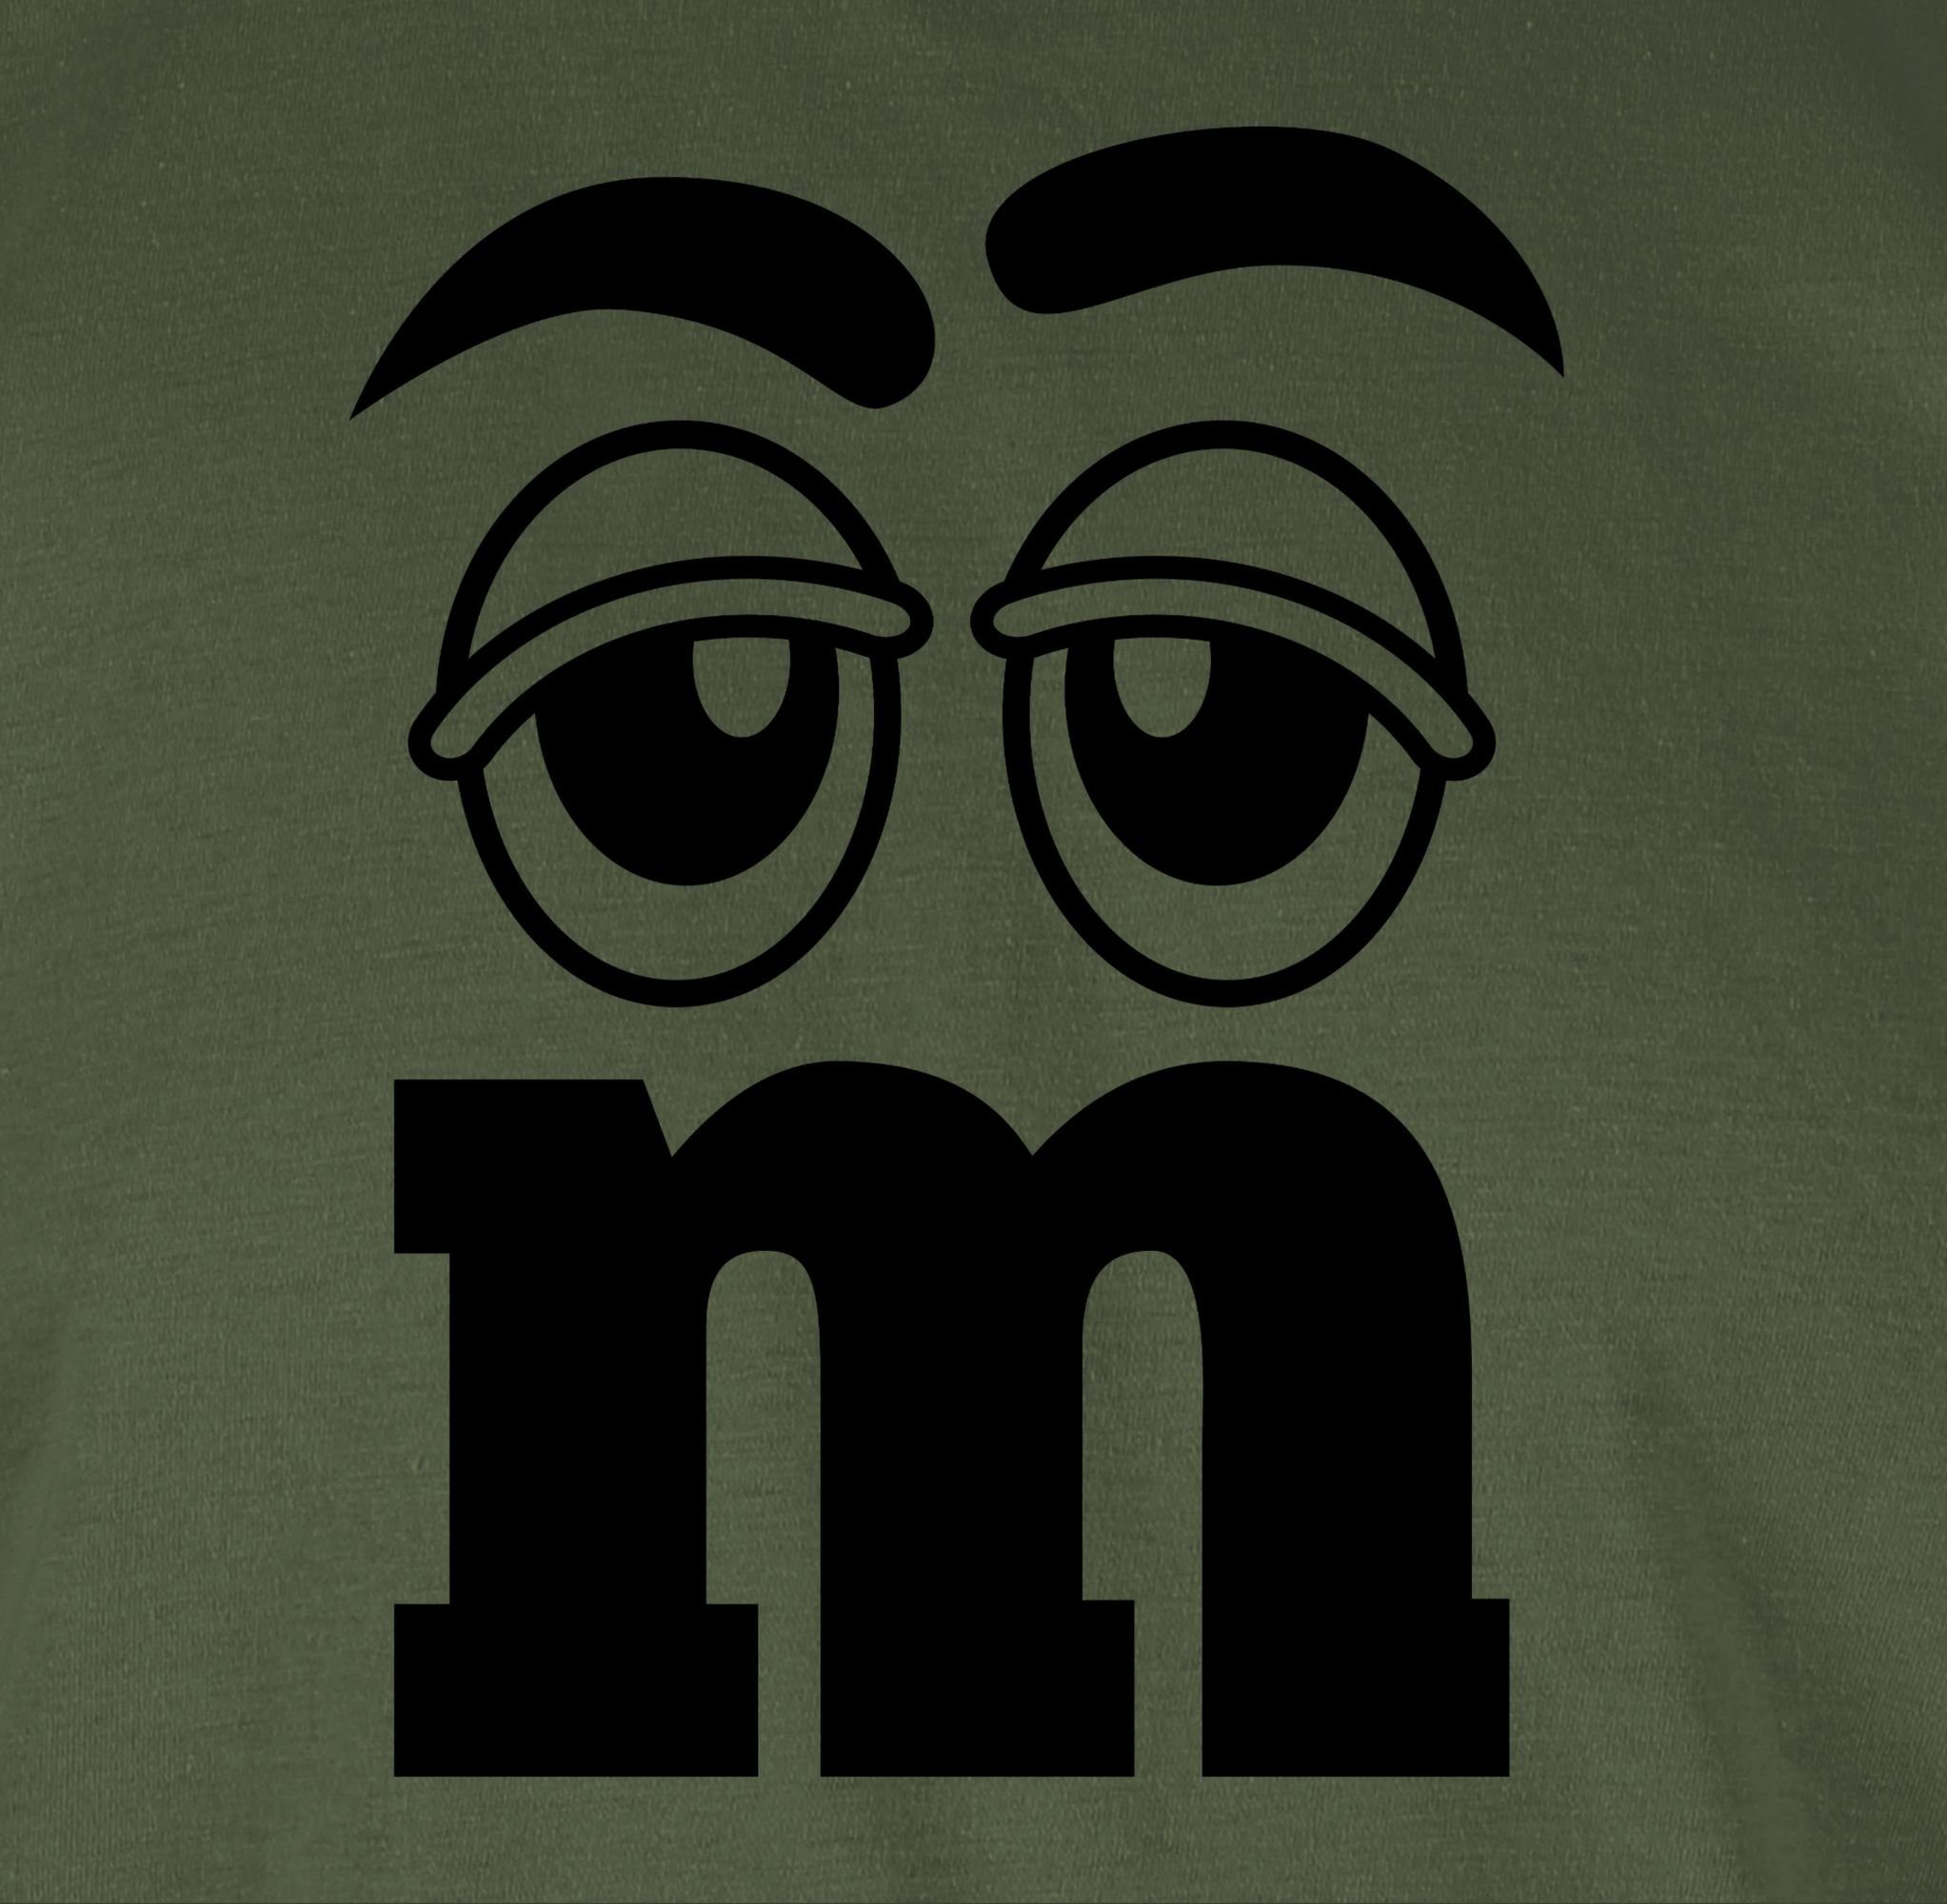 Shirtracer T-Shirt M und M Aufdruck Karneval M&M Army Figuren Fasching & Grün 05